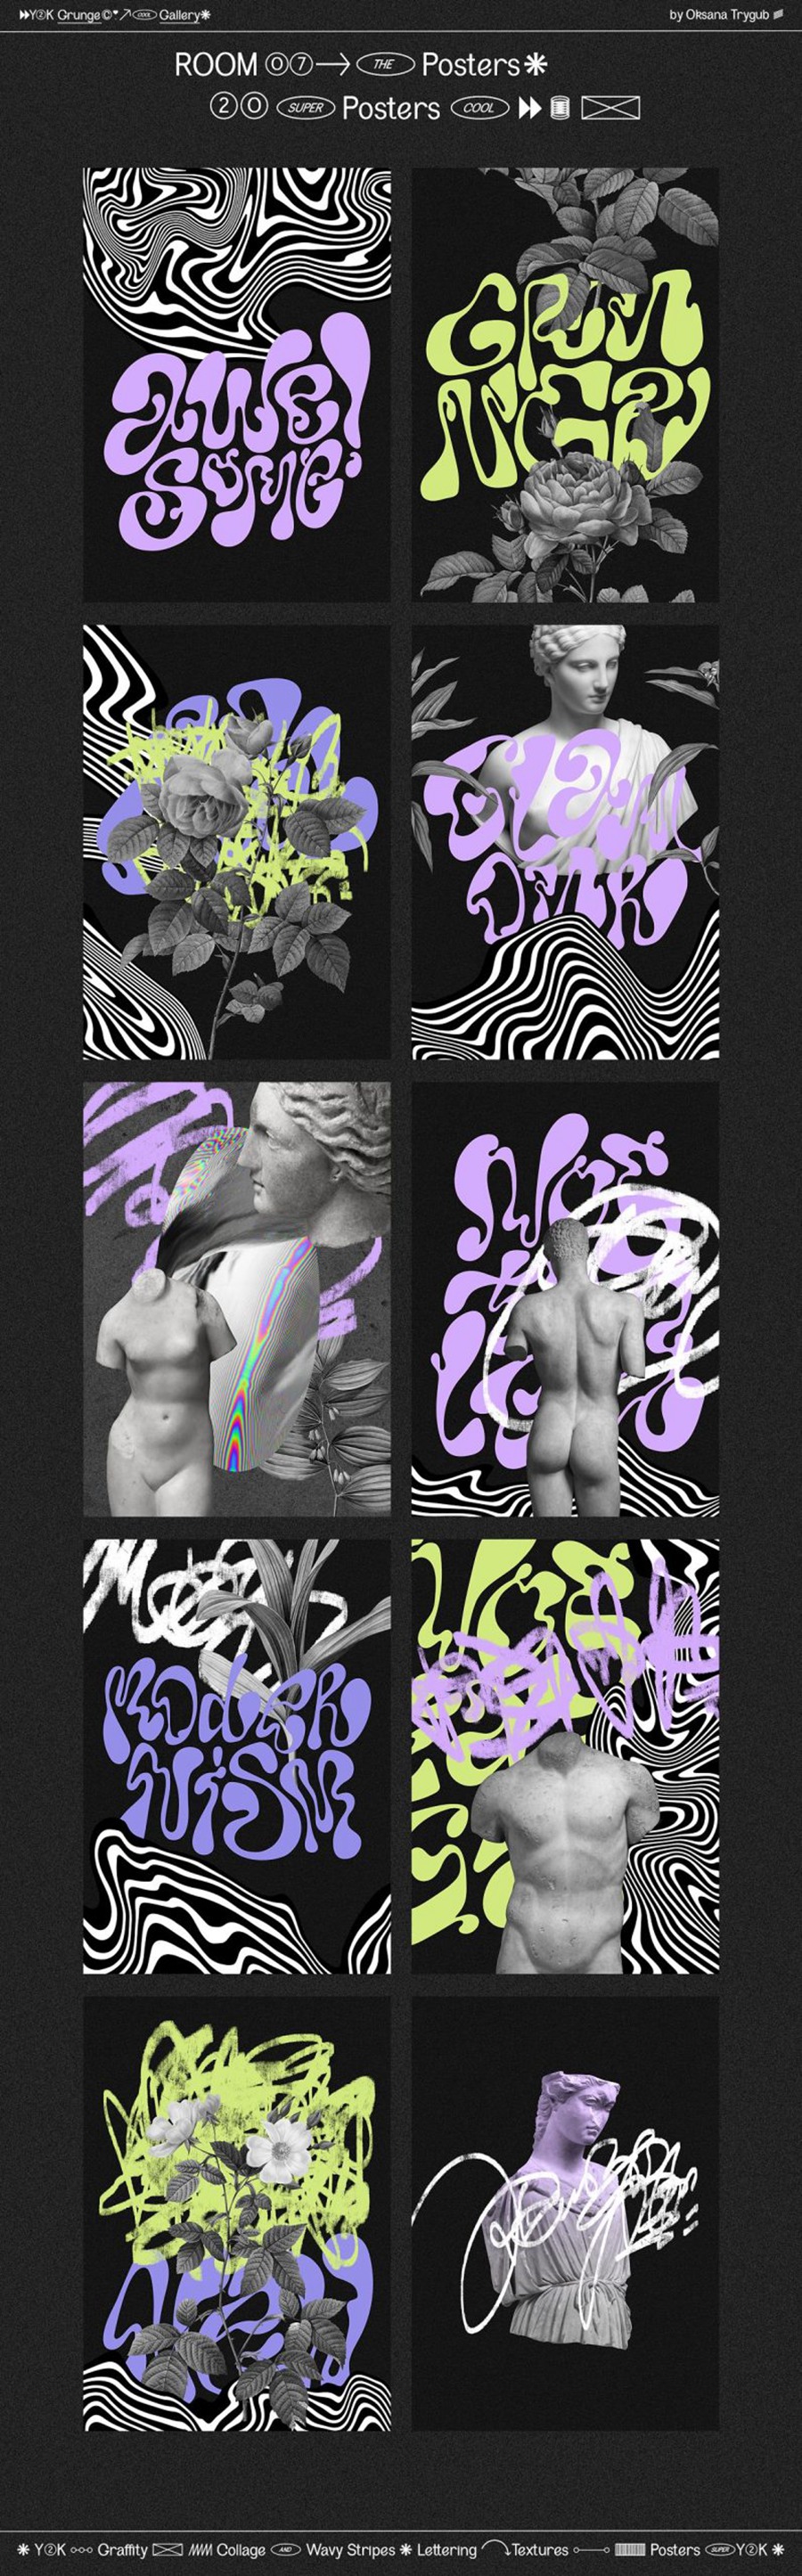 千禧年涂鸦垃圾美学Y2K涂鸦迷幻拼贴艺术波浪条纹背景形状素材包 Grunge Gallery: Graffiti Collage . 第24张